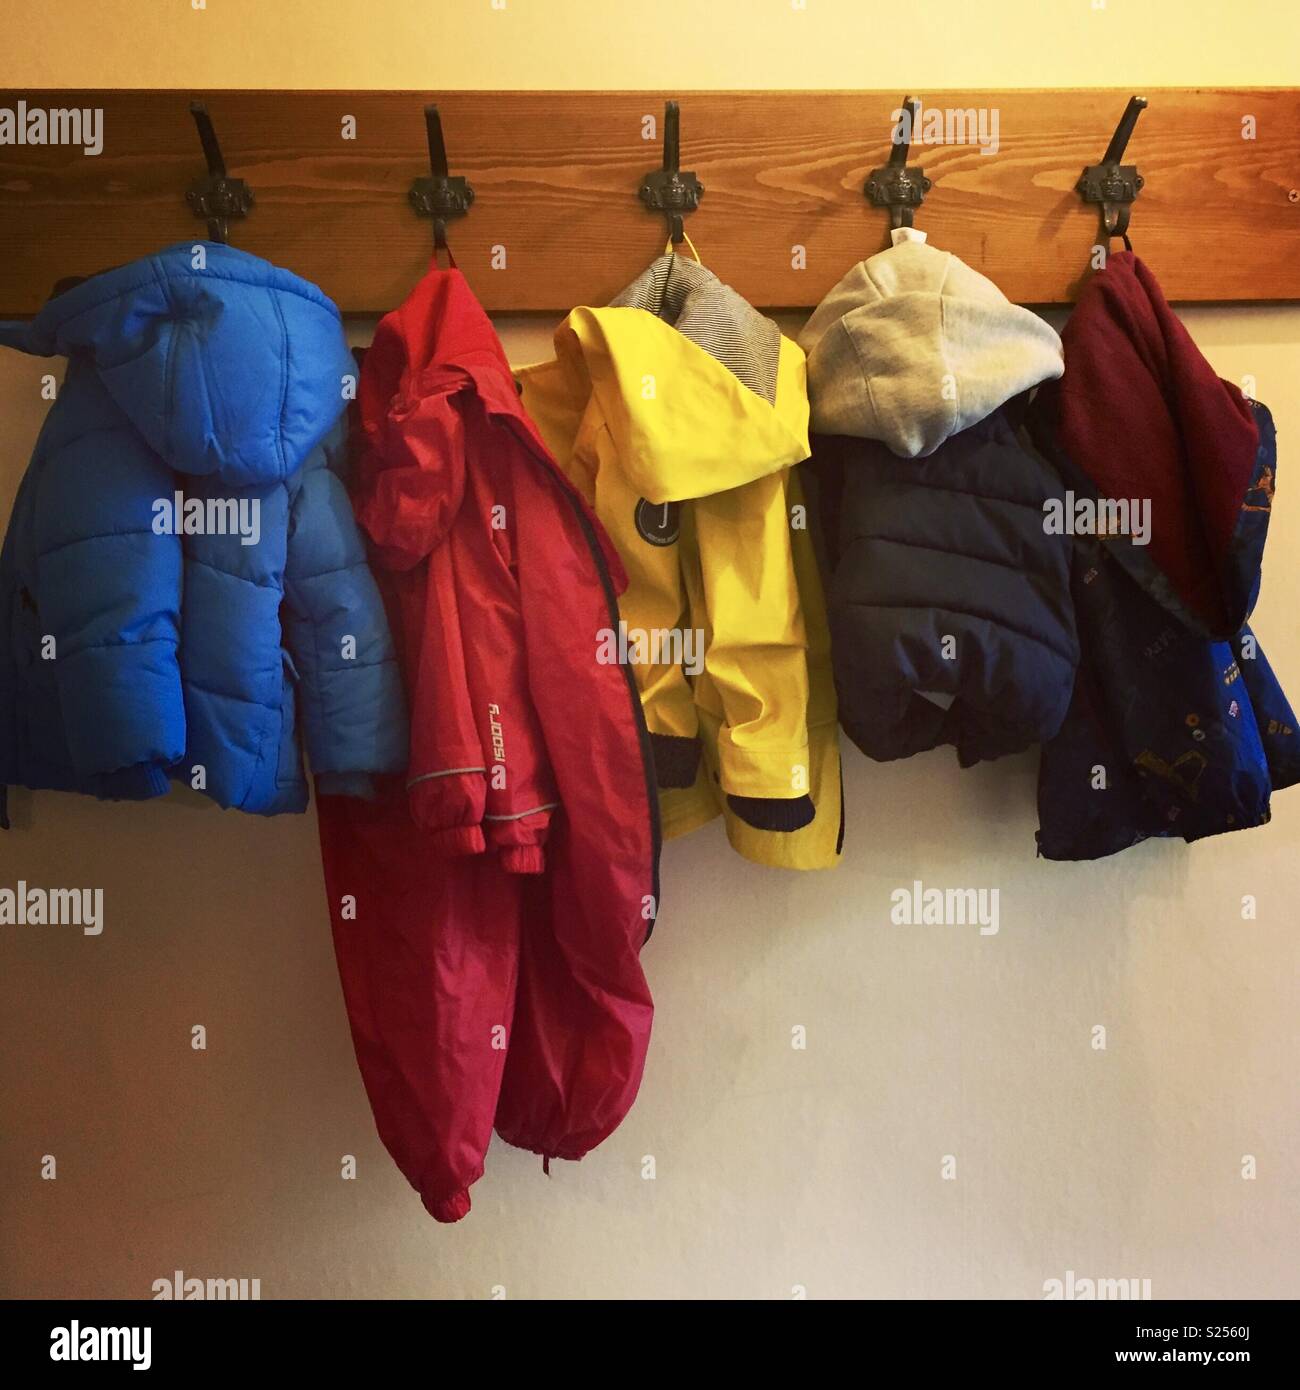 Fila de niño abrigos coloridos en el perchero Foto de stock